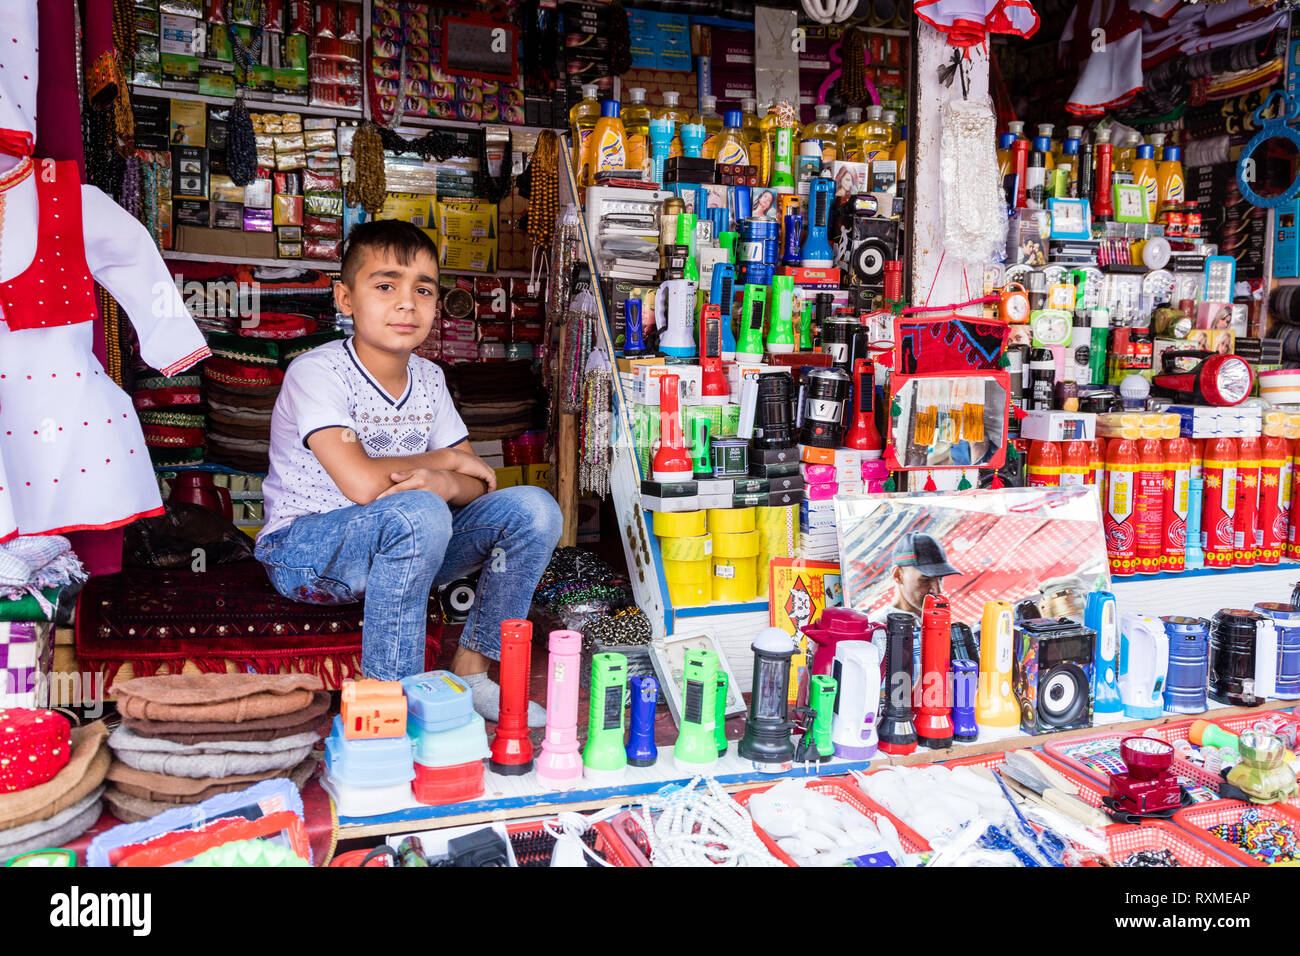 Khorog, Tagikistan 25 Agosto 2018: bel ragazzo è seduto nel suo stallo, in attesa di acquirente della sua mercanzia, Khorog, Tagikistan Foto Stock